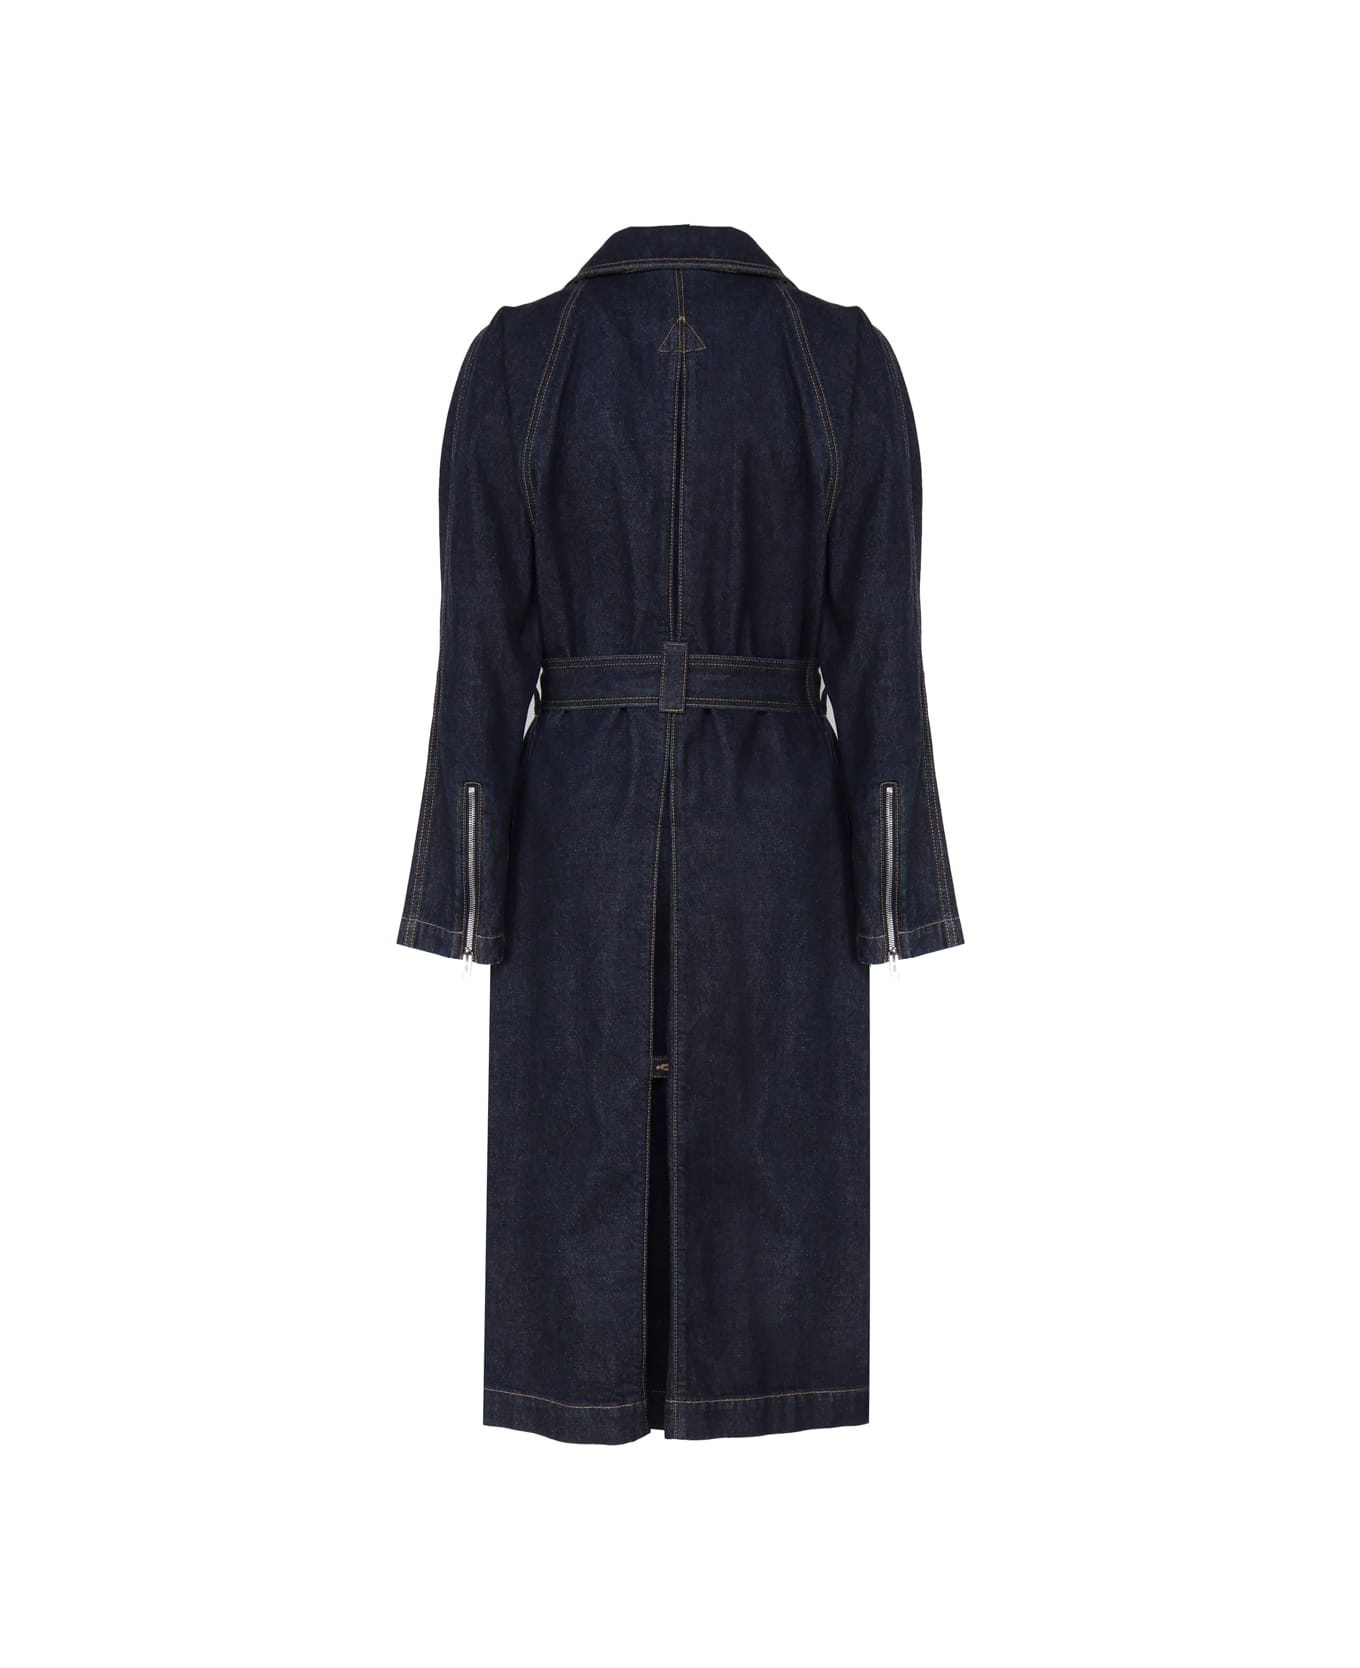 Alaia Classic Coat In Cotton Denim - DENIM BLUE コート